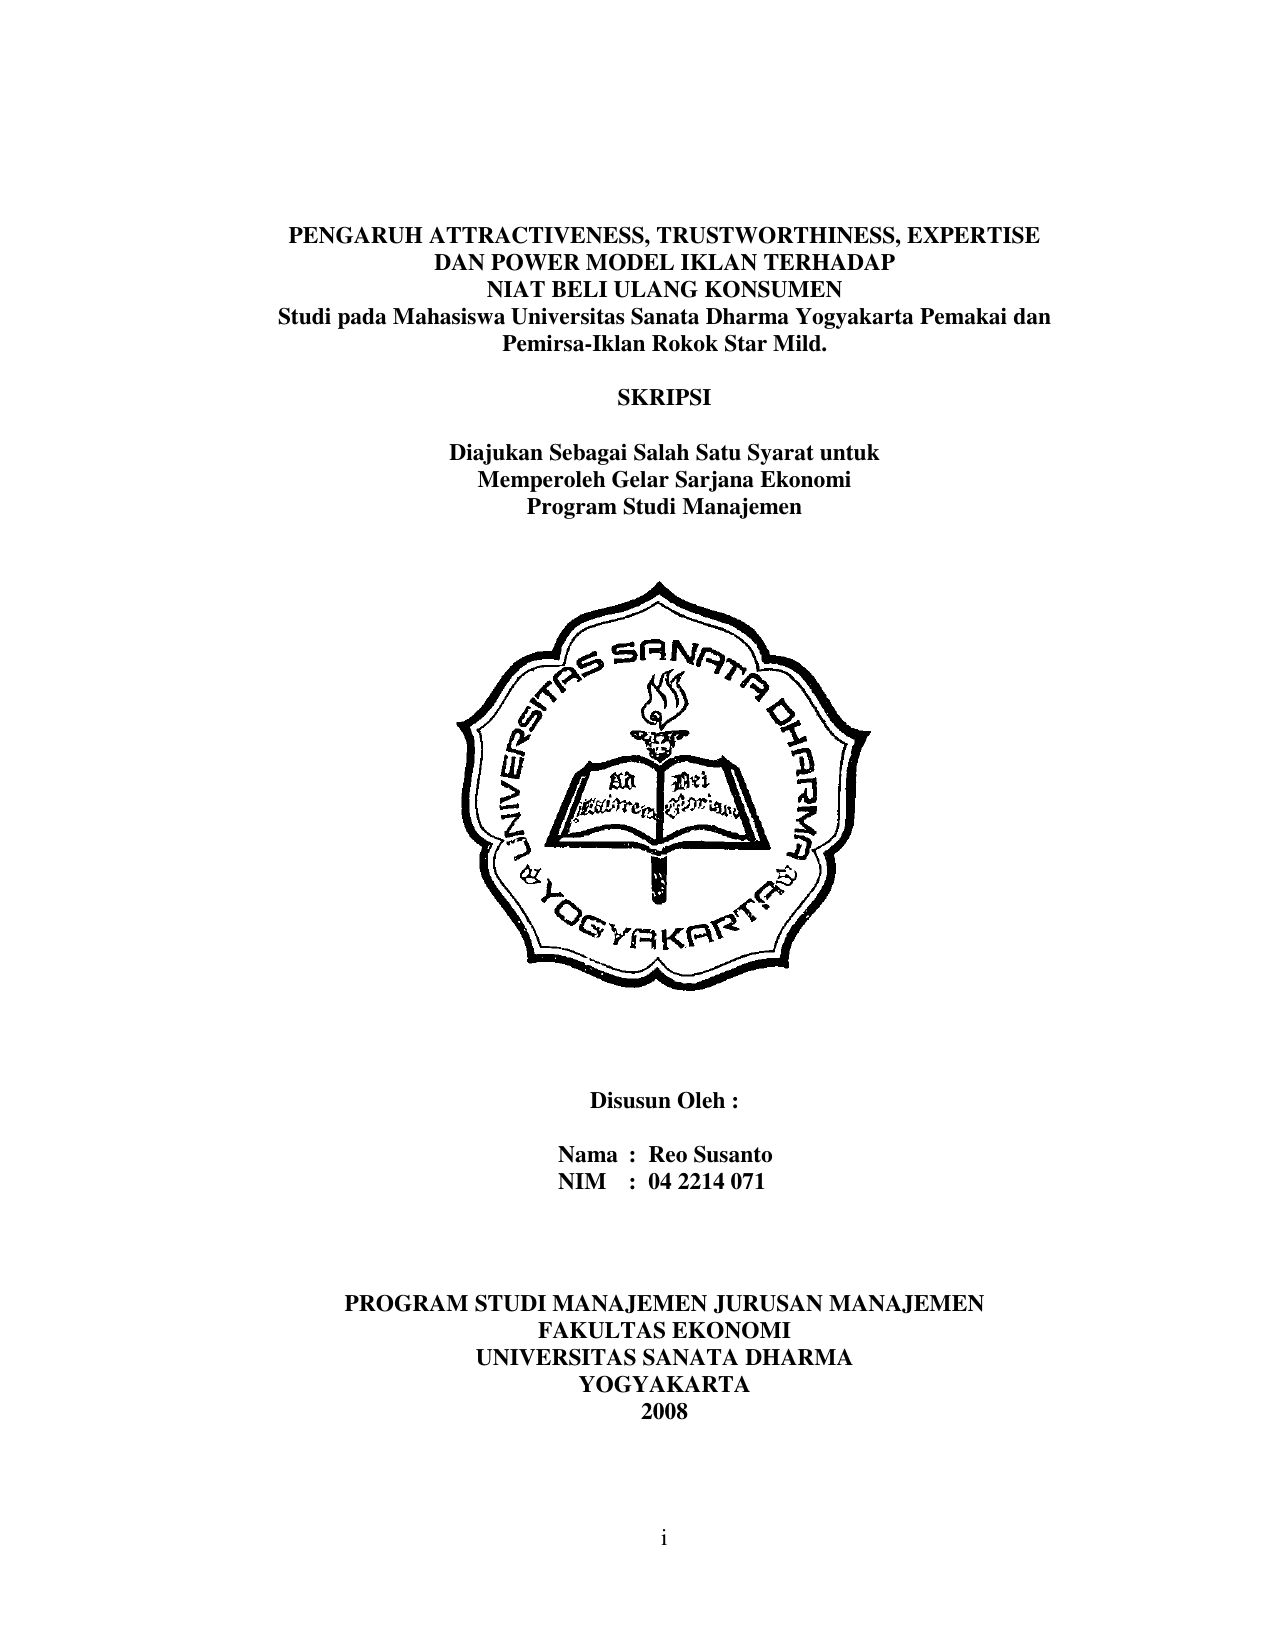 POWER MODEL IKLAN TERHADAP NIAT BELI ULANG KONSUMEN Studi pada Mahasiswa Universitas Sanata Dharma Yogyakarta Pemakai dan Pemirsa Iklan Rokok Star Mild